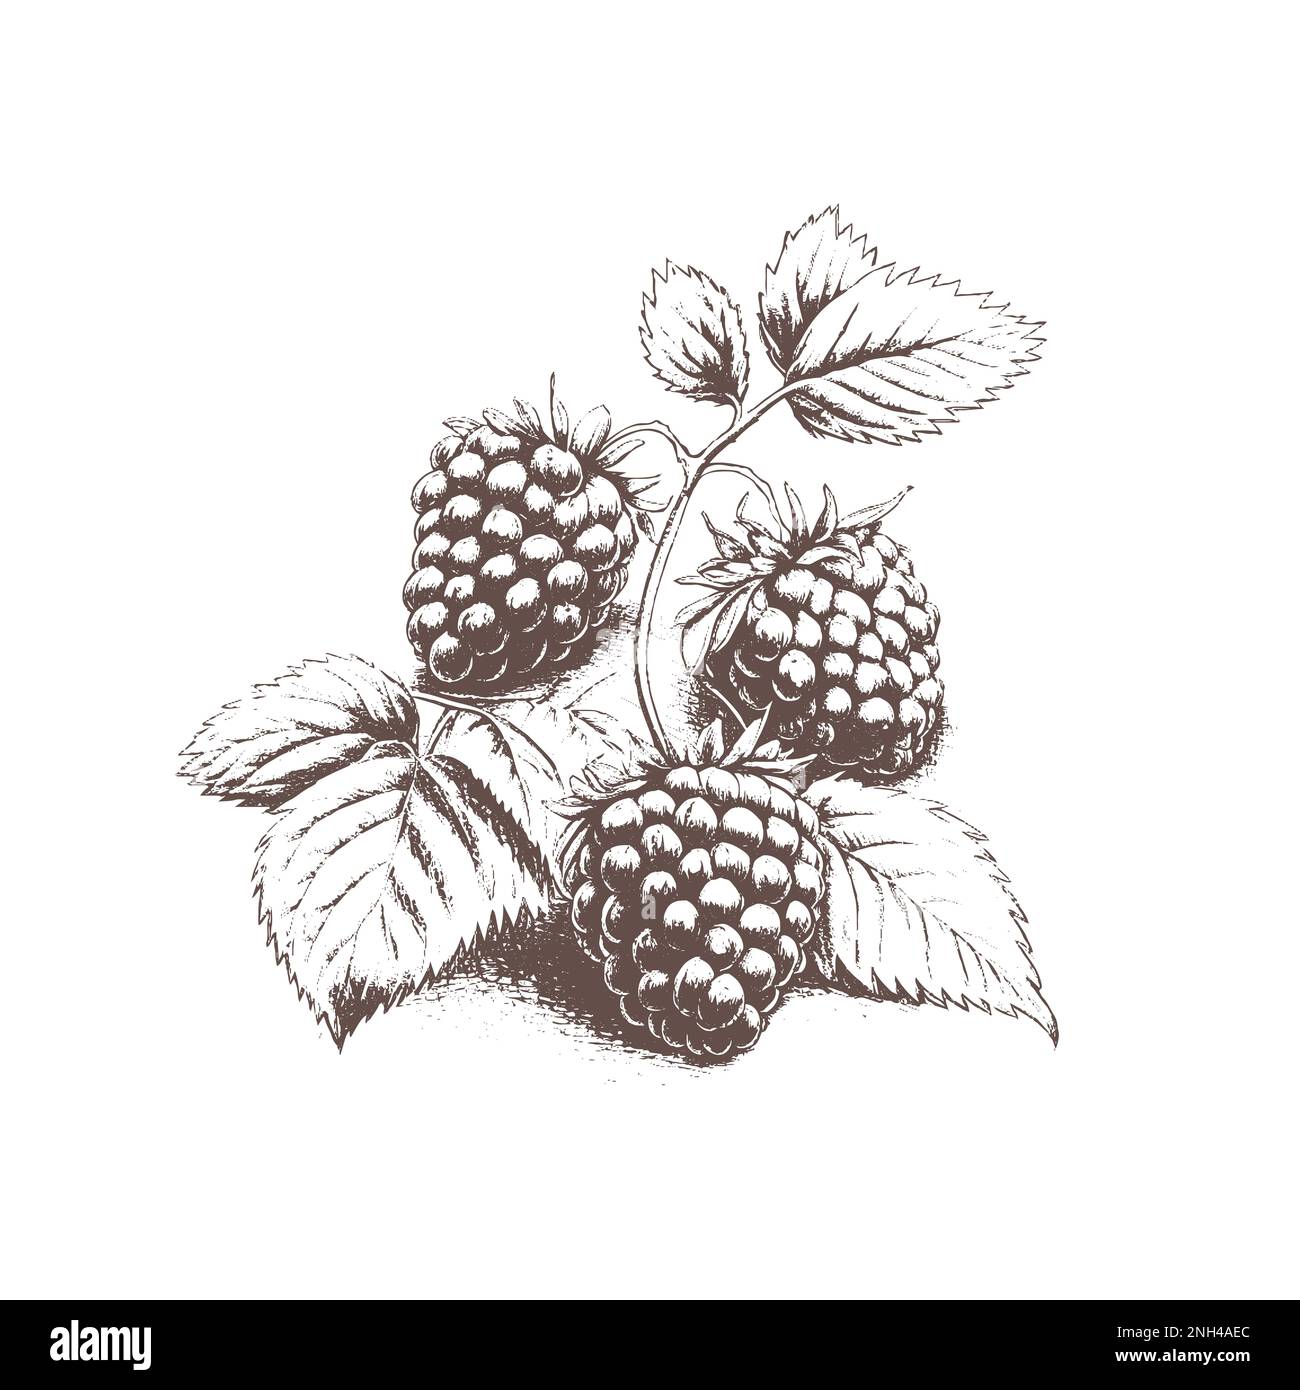 Handgezeichnete Zeichnung schwarz-weiß von Himbeere, Blatt, Beerenpflanze. Vektordarstellung. Elemente in Grafiketikett, Karte, Aufkleber, Menü, Paket. Stock Vektor